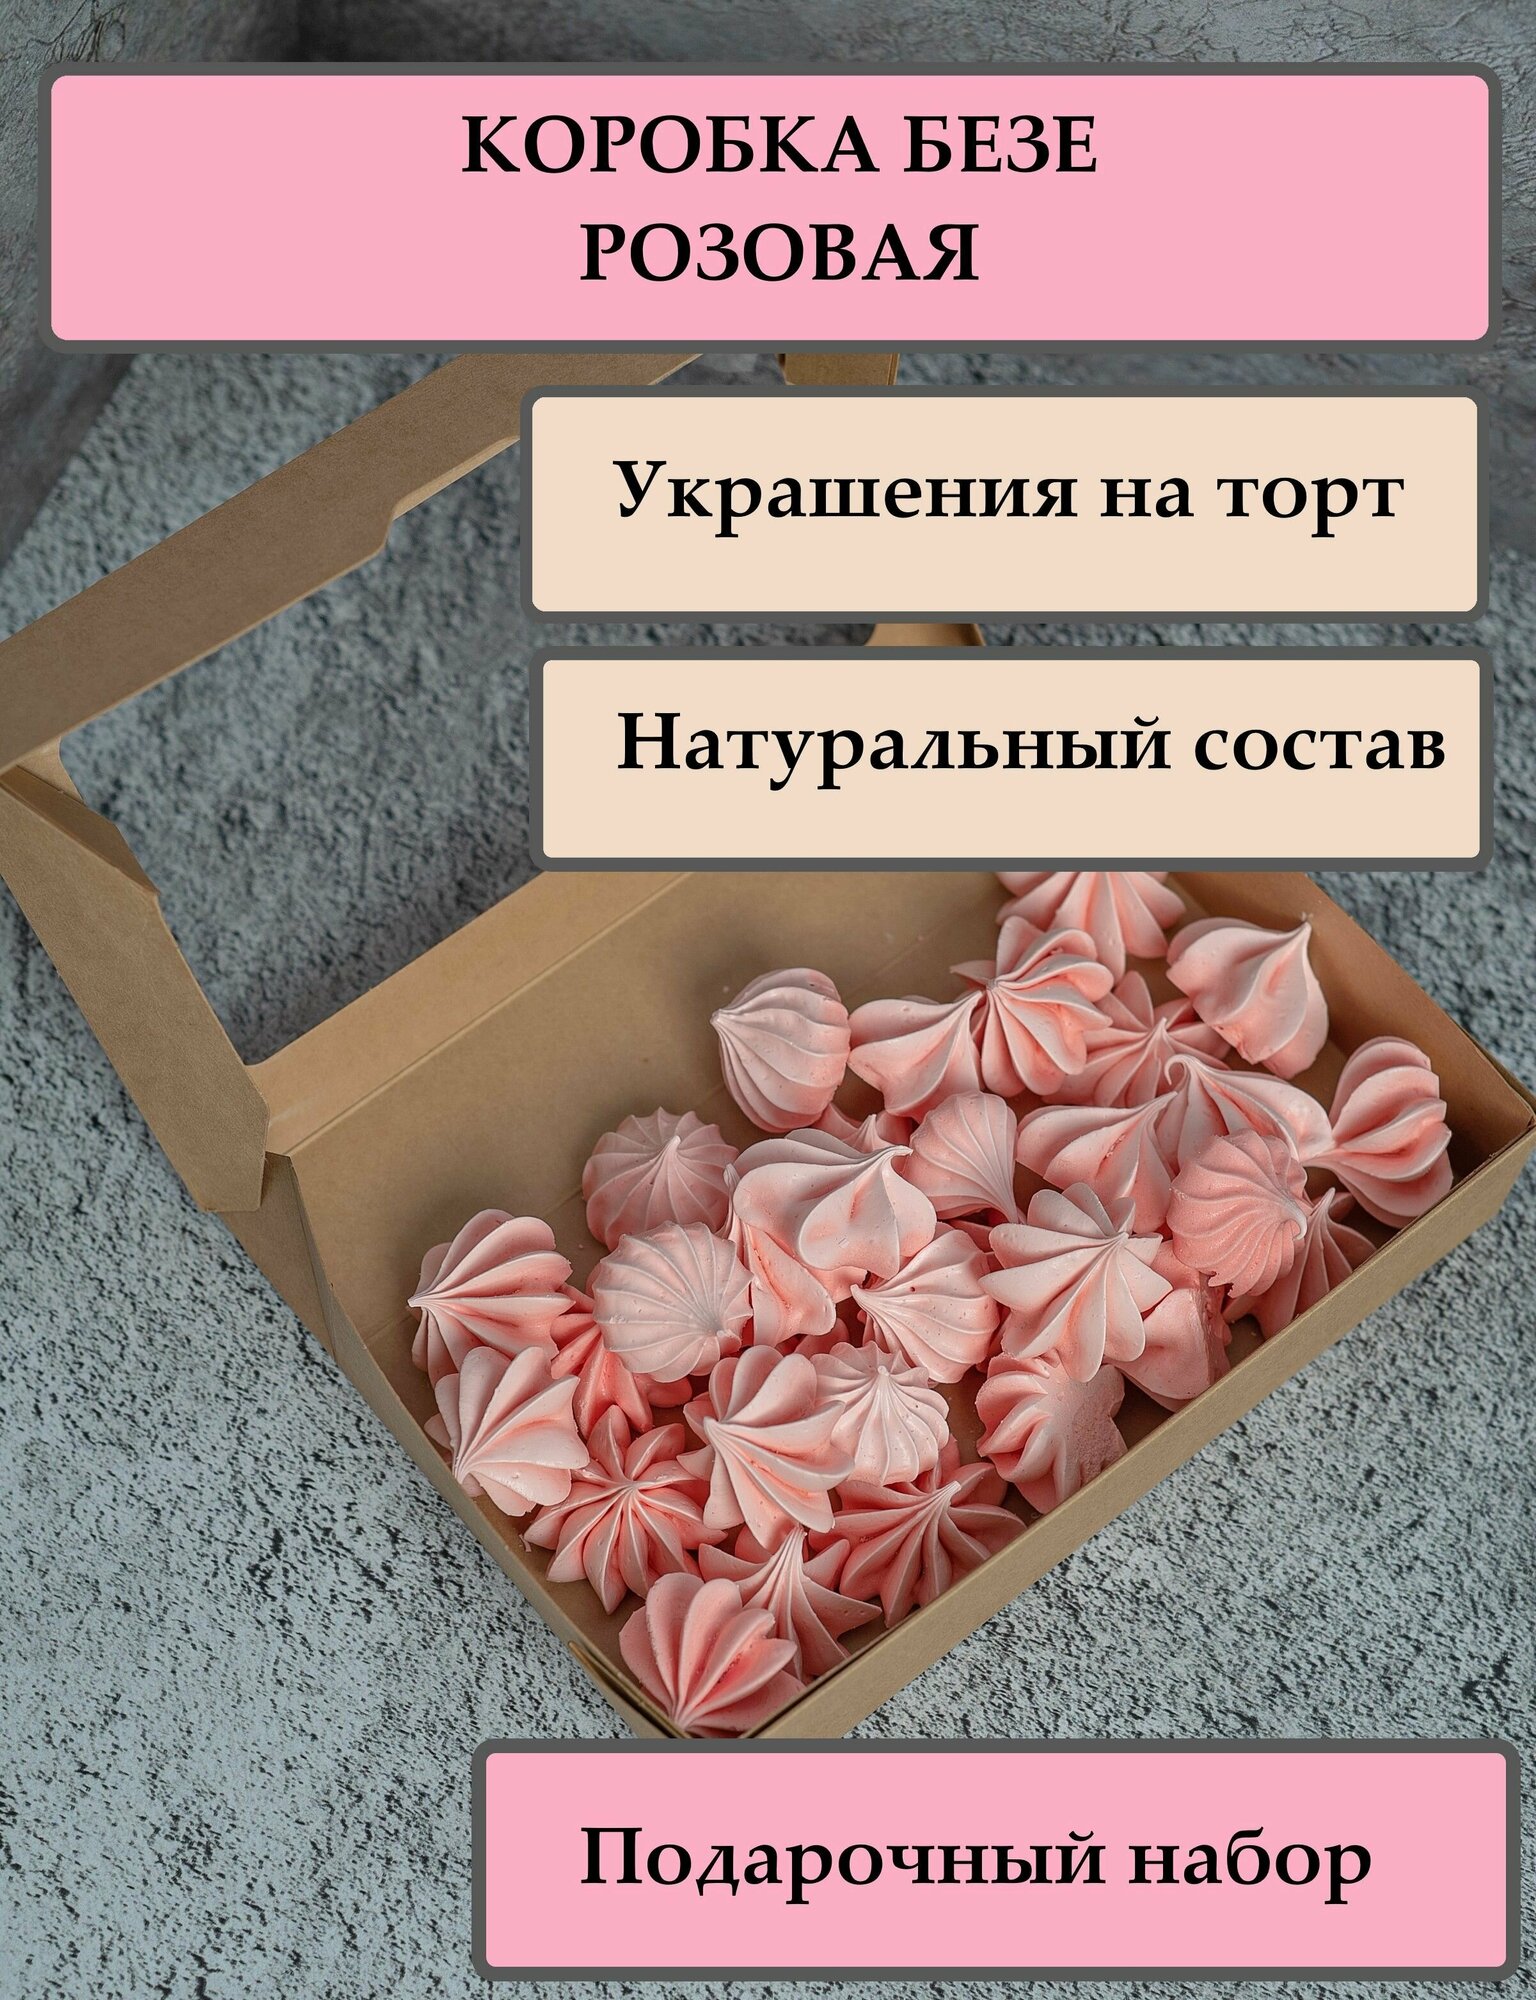 Безе розовые в коробочке